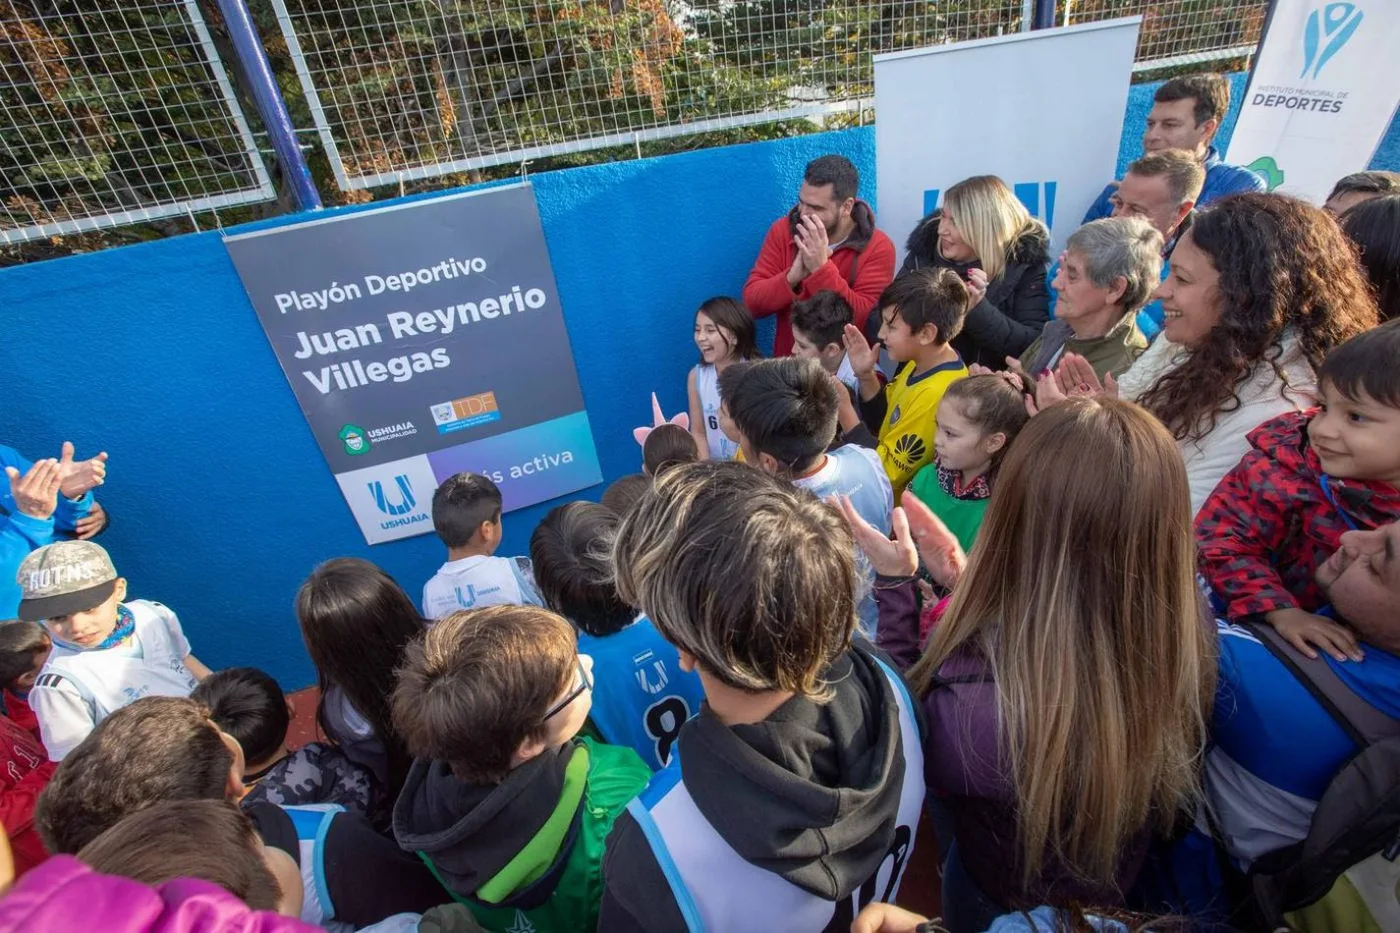 Bertone y Vuoto inauguraron el playón deportivo en el barrio San Salvador